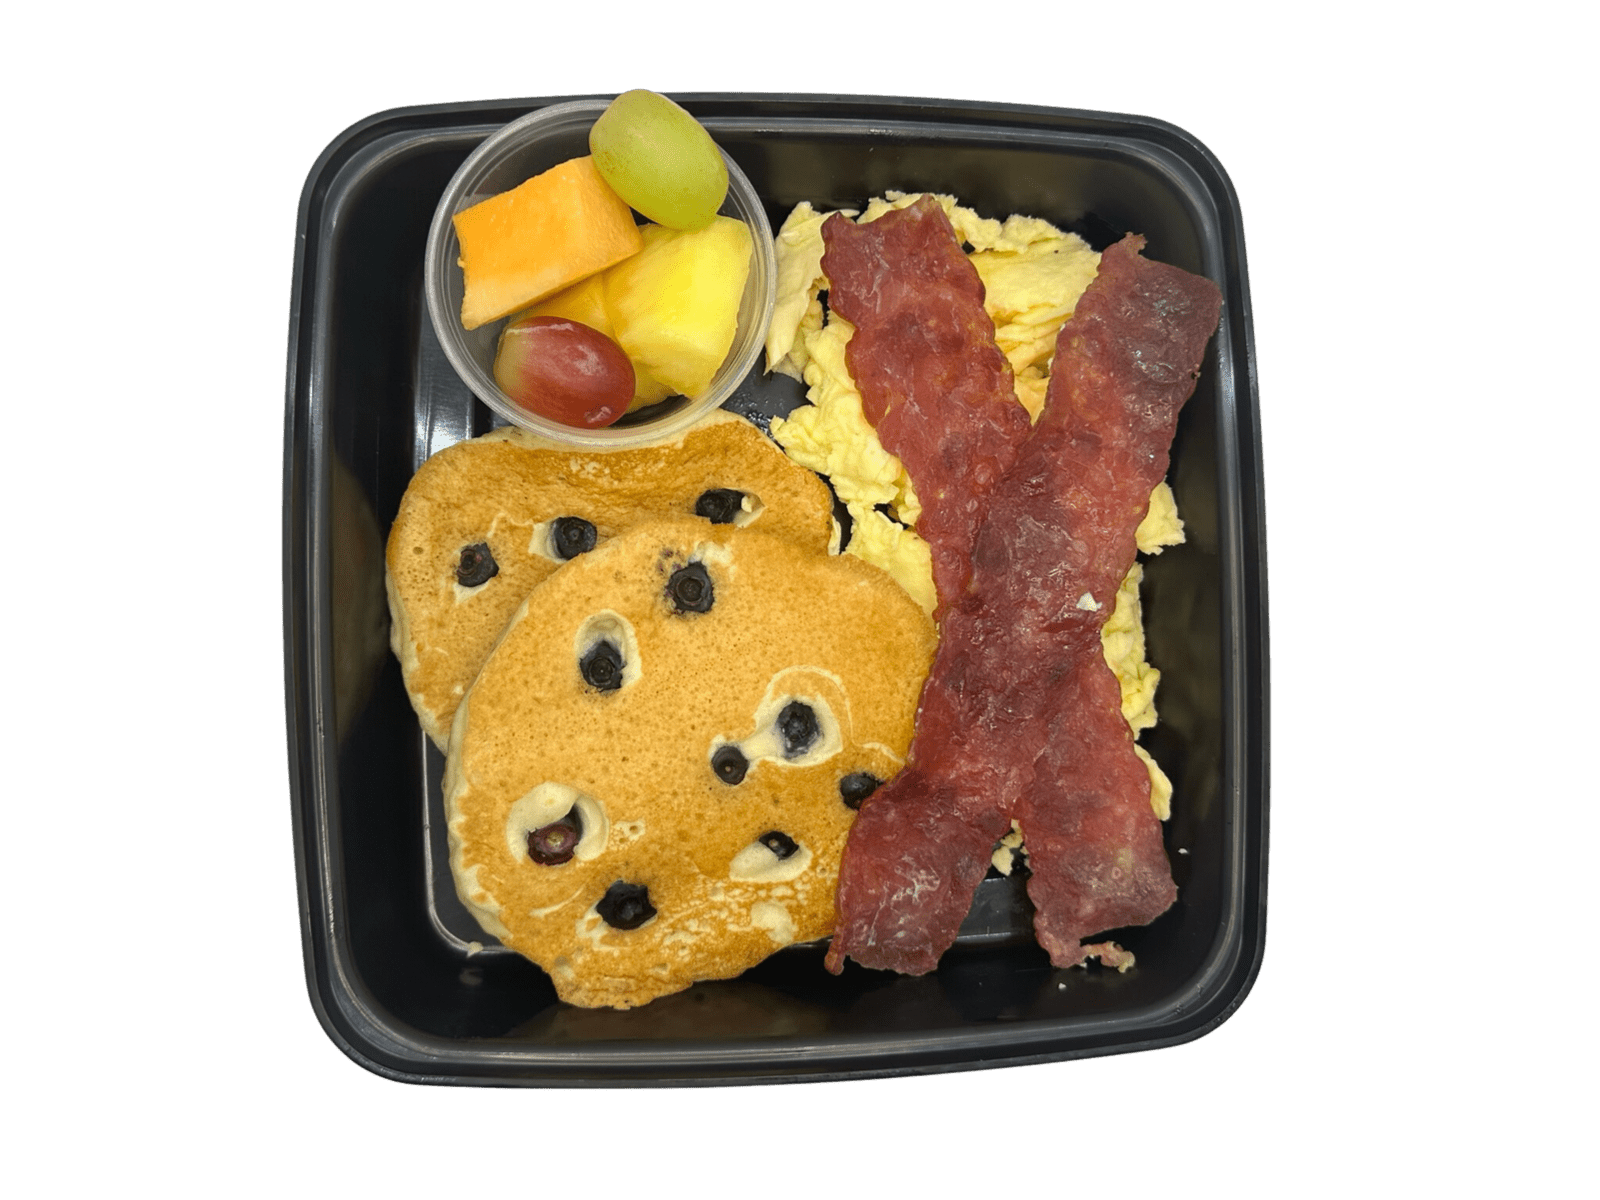 Breakfast Platter: Pancakes, Eggs, Bacon, Fruit - Whole Body Fuel